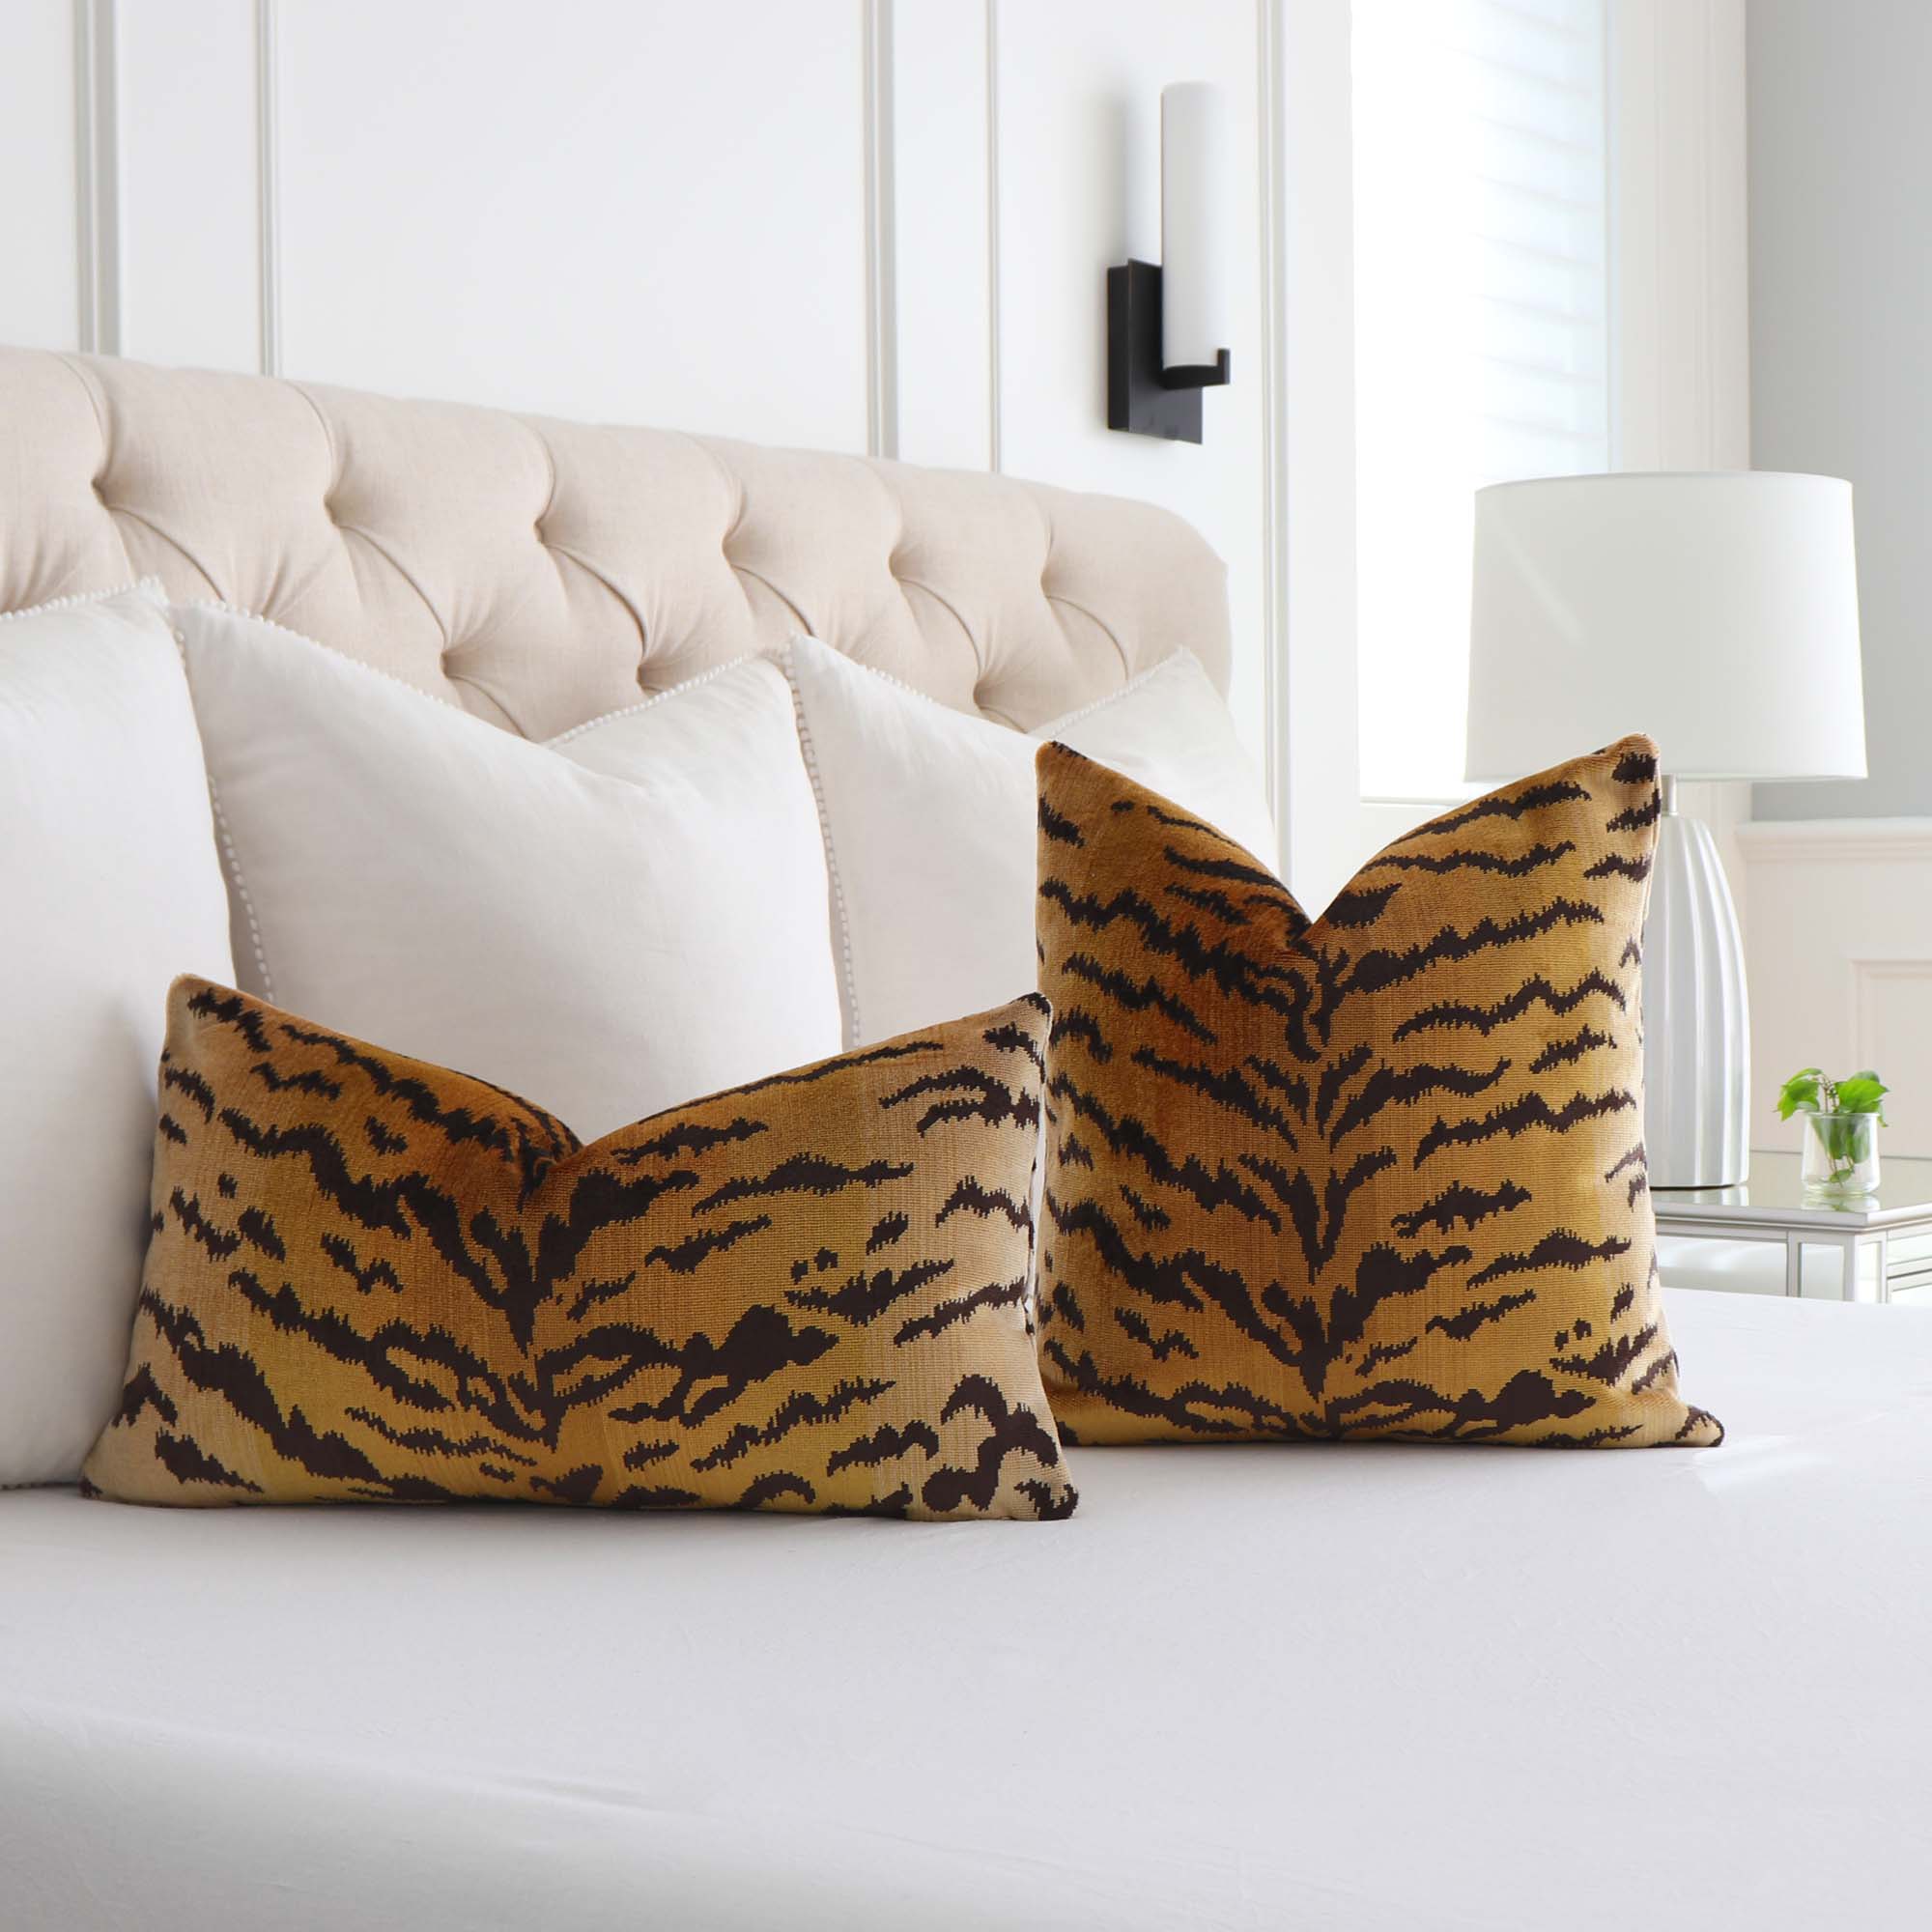 Tiger Print Pillow With Cheetah Print, Lumbar Pillow